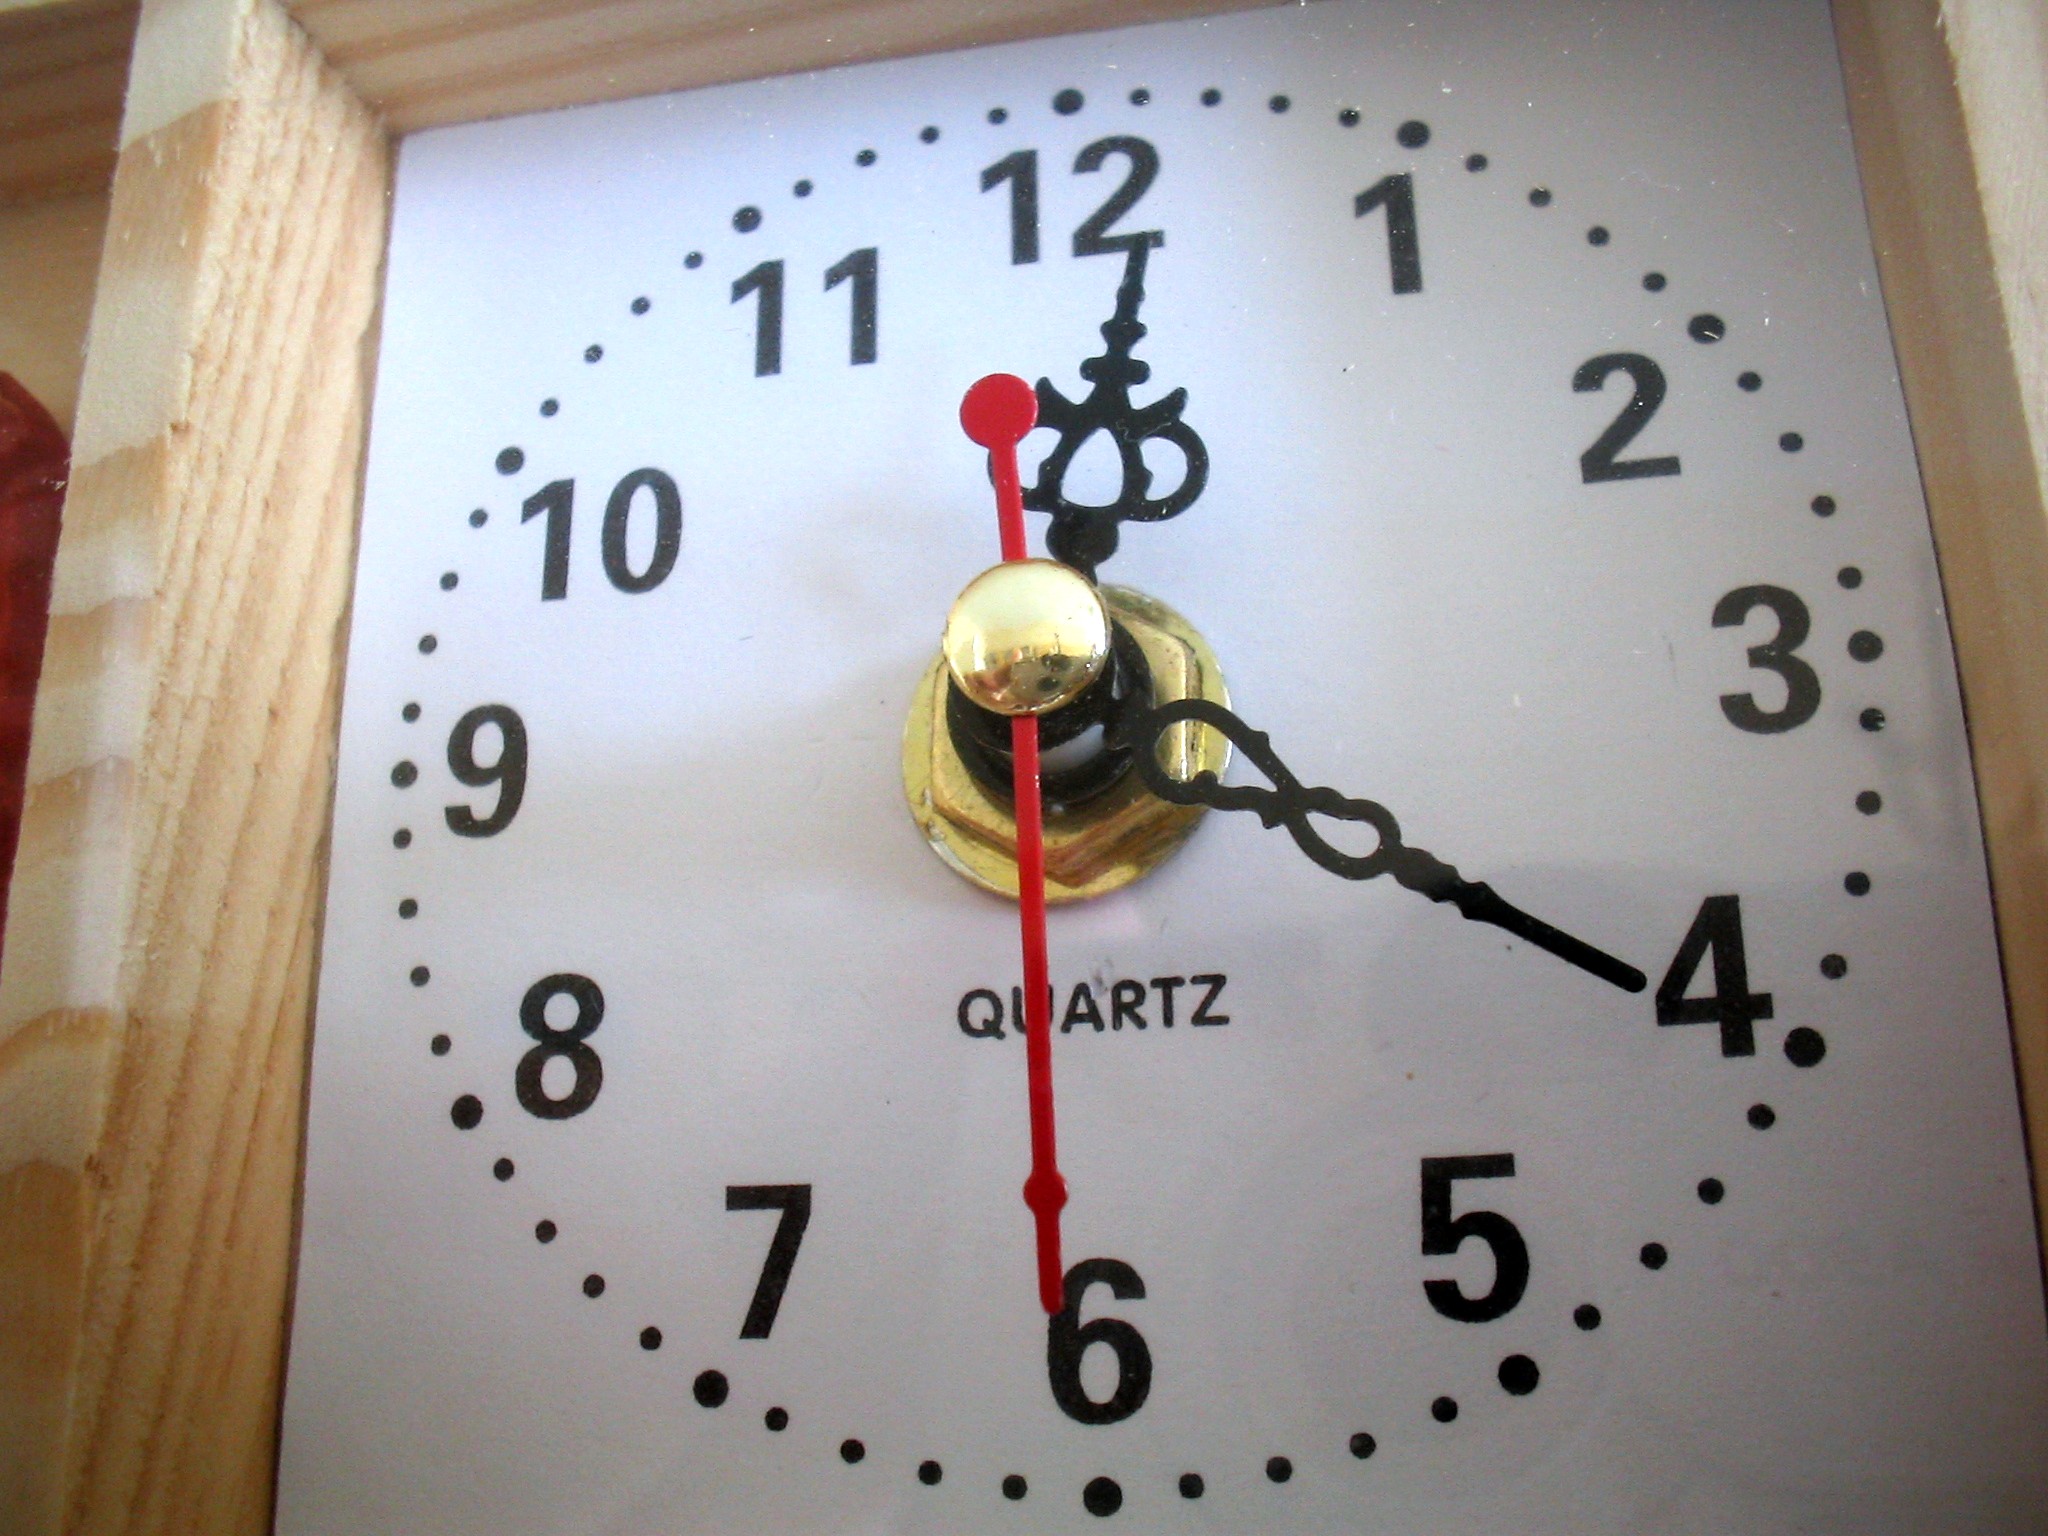 what is quartz clock